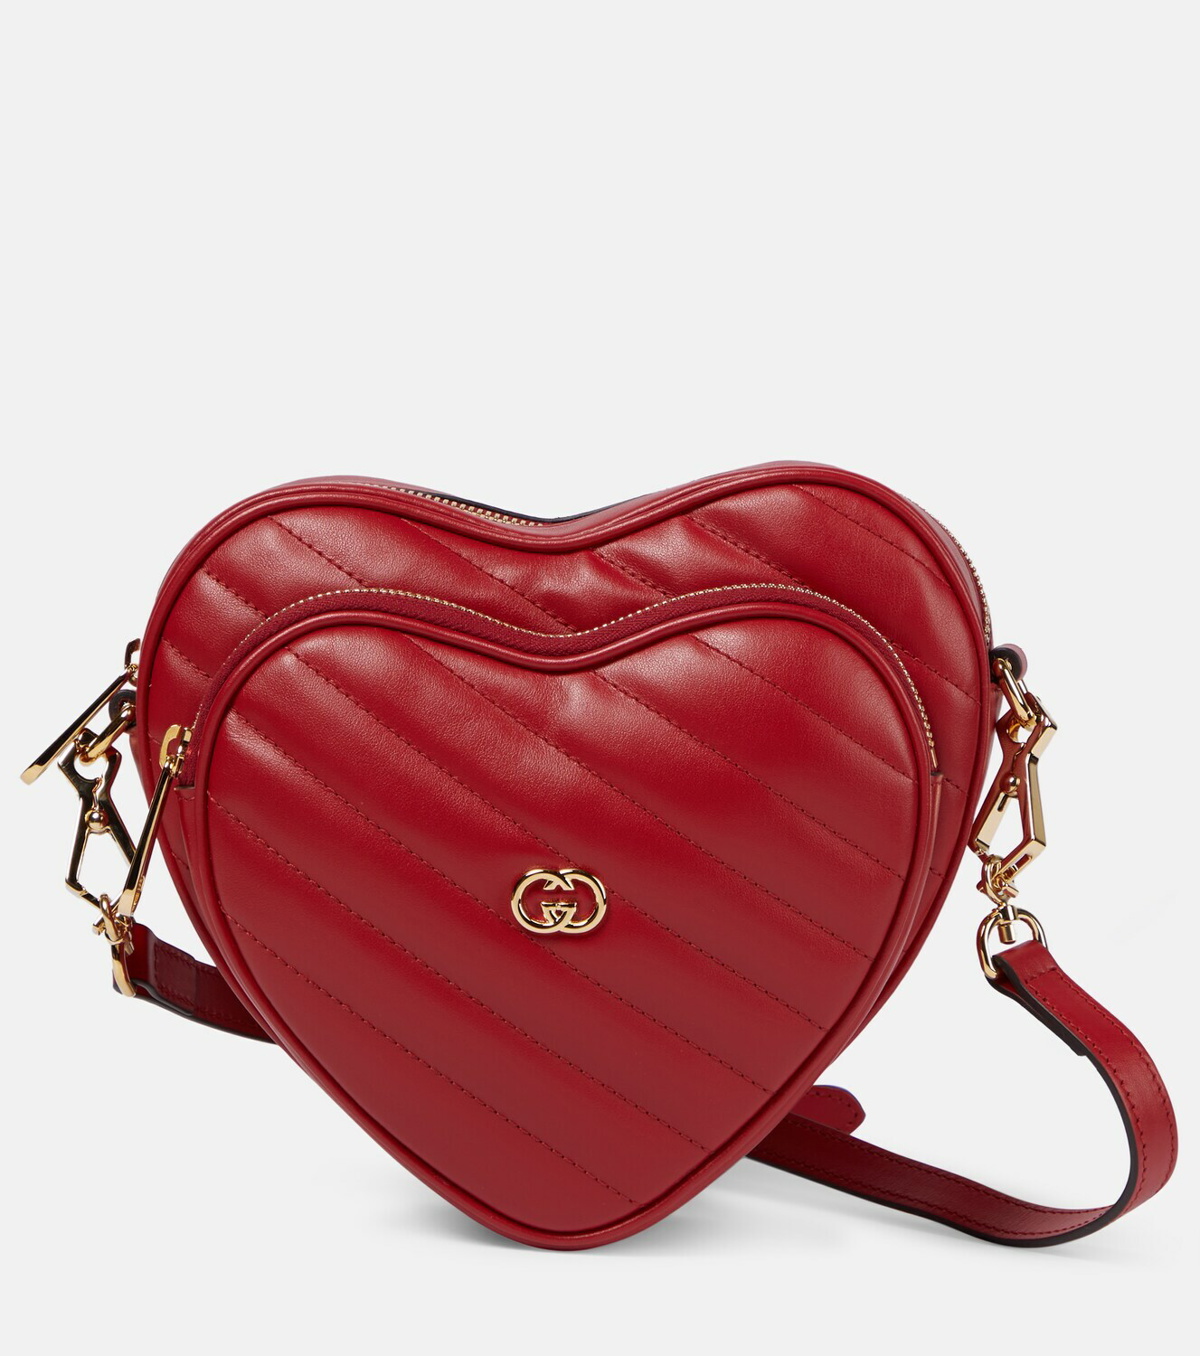 Gucci Heart Interlocking G leather shoulder bag